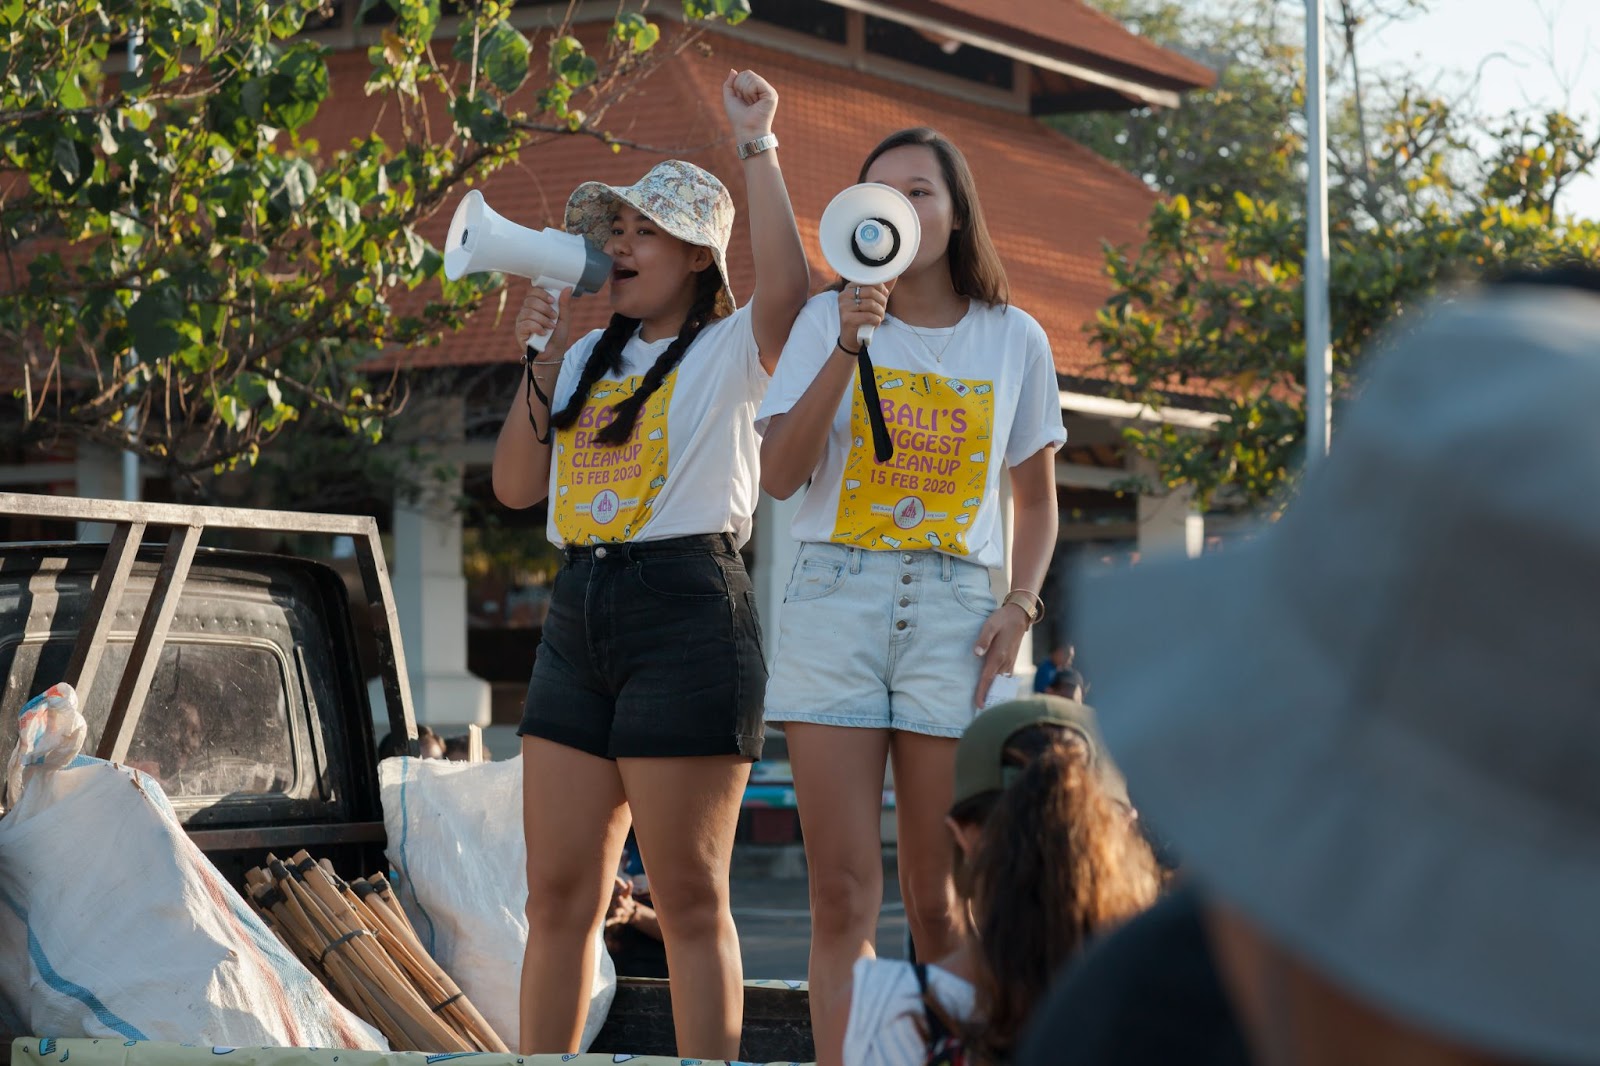 Klimaatactiviste Melati staat samen met haar zusje op een auto en roept door een megafoon tijdens de Bali's Biggest Clean Up.